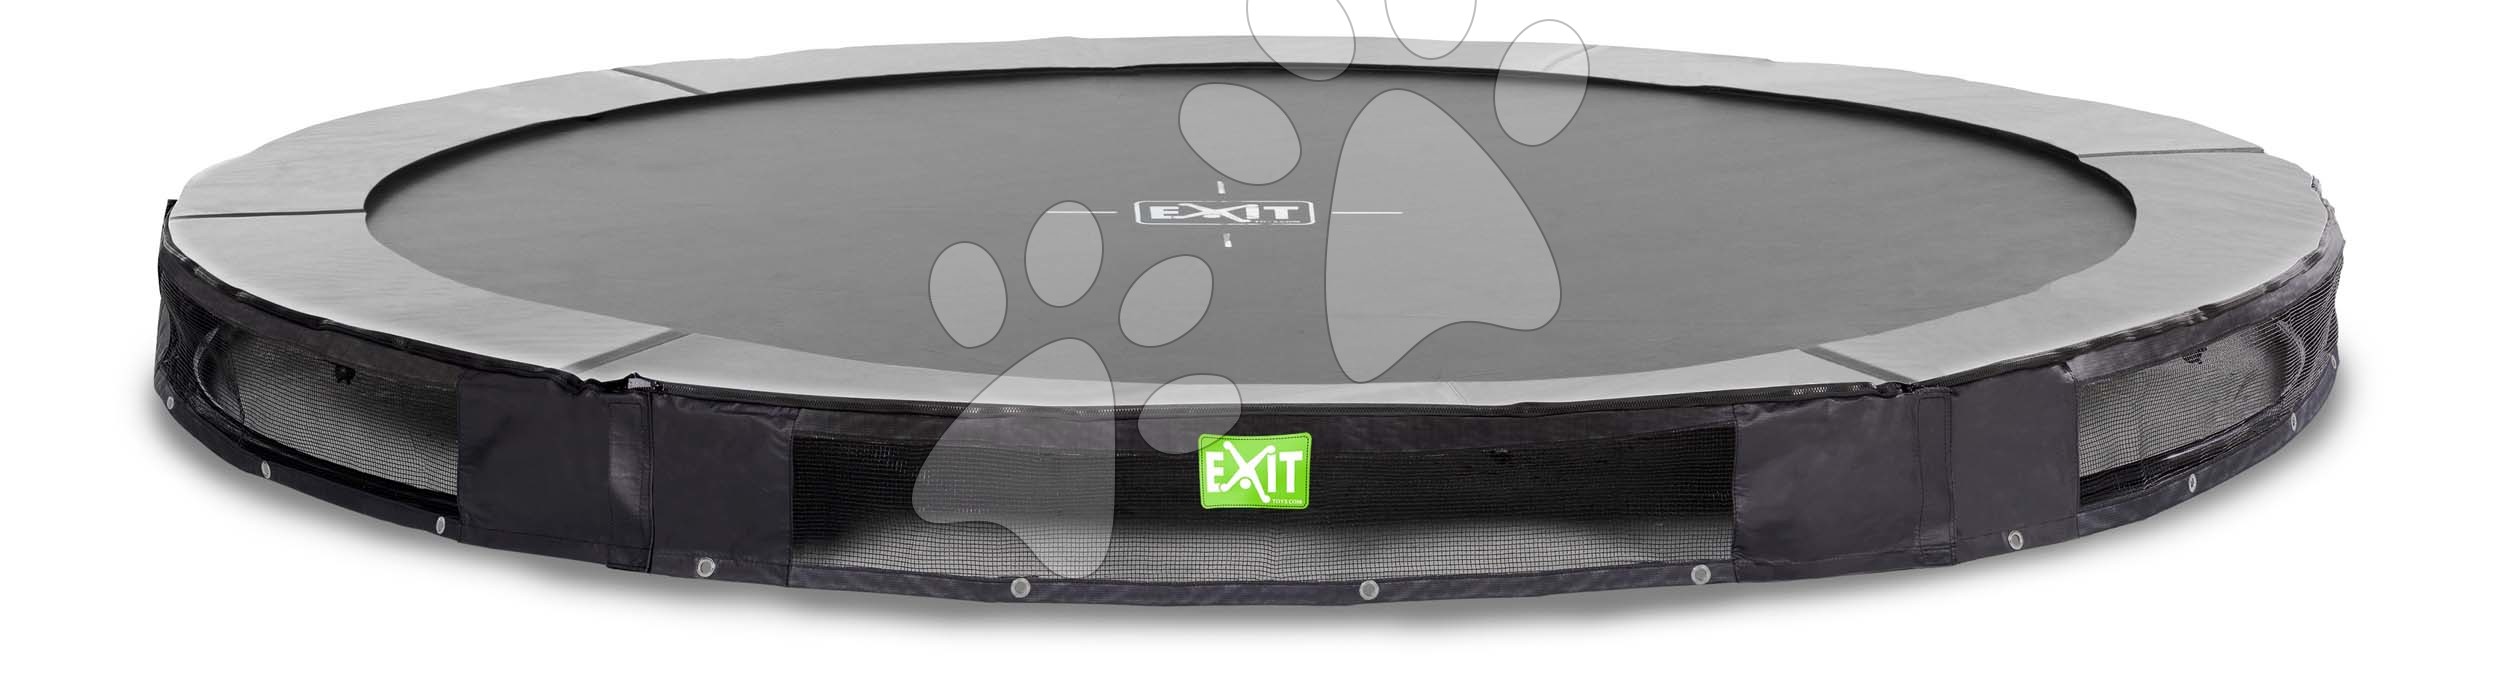 E-shop Trampolína Elegant Ground Sports Black Exit Toys prízemná okrúhla 305 cm priemer čierna